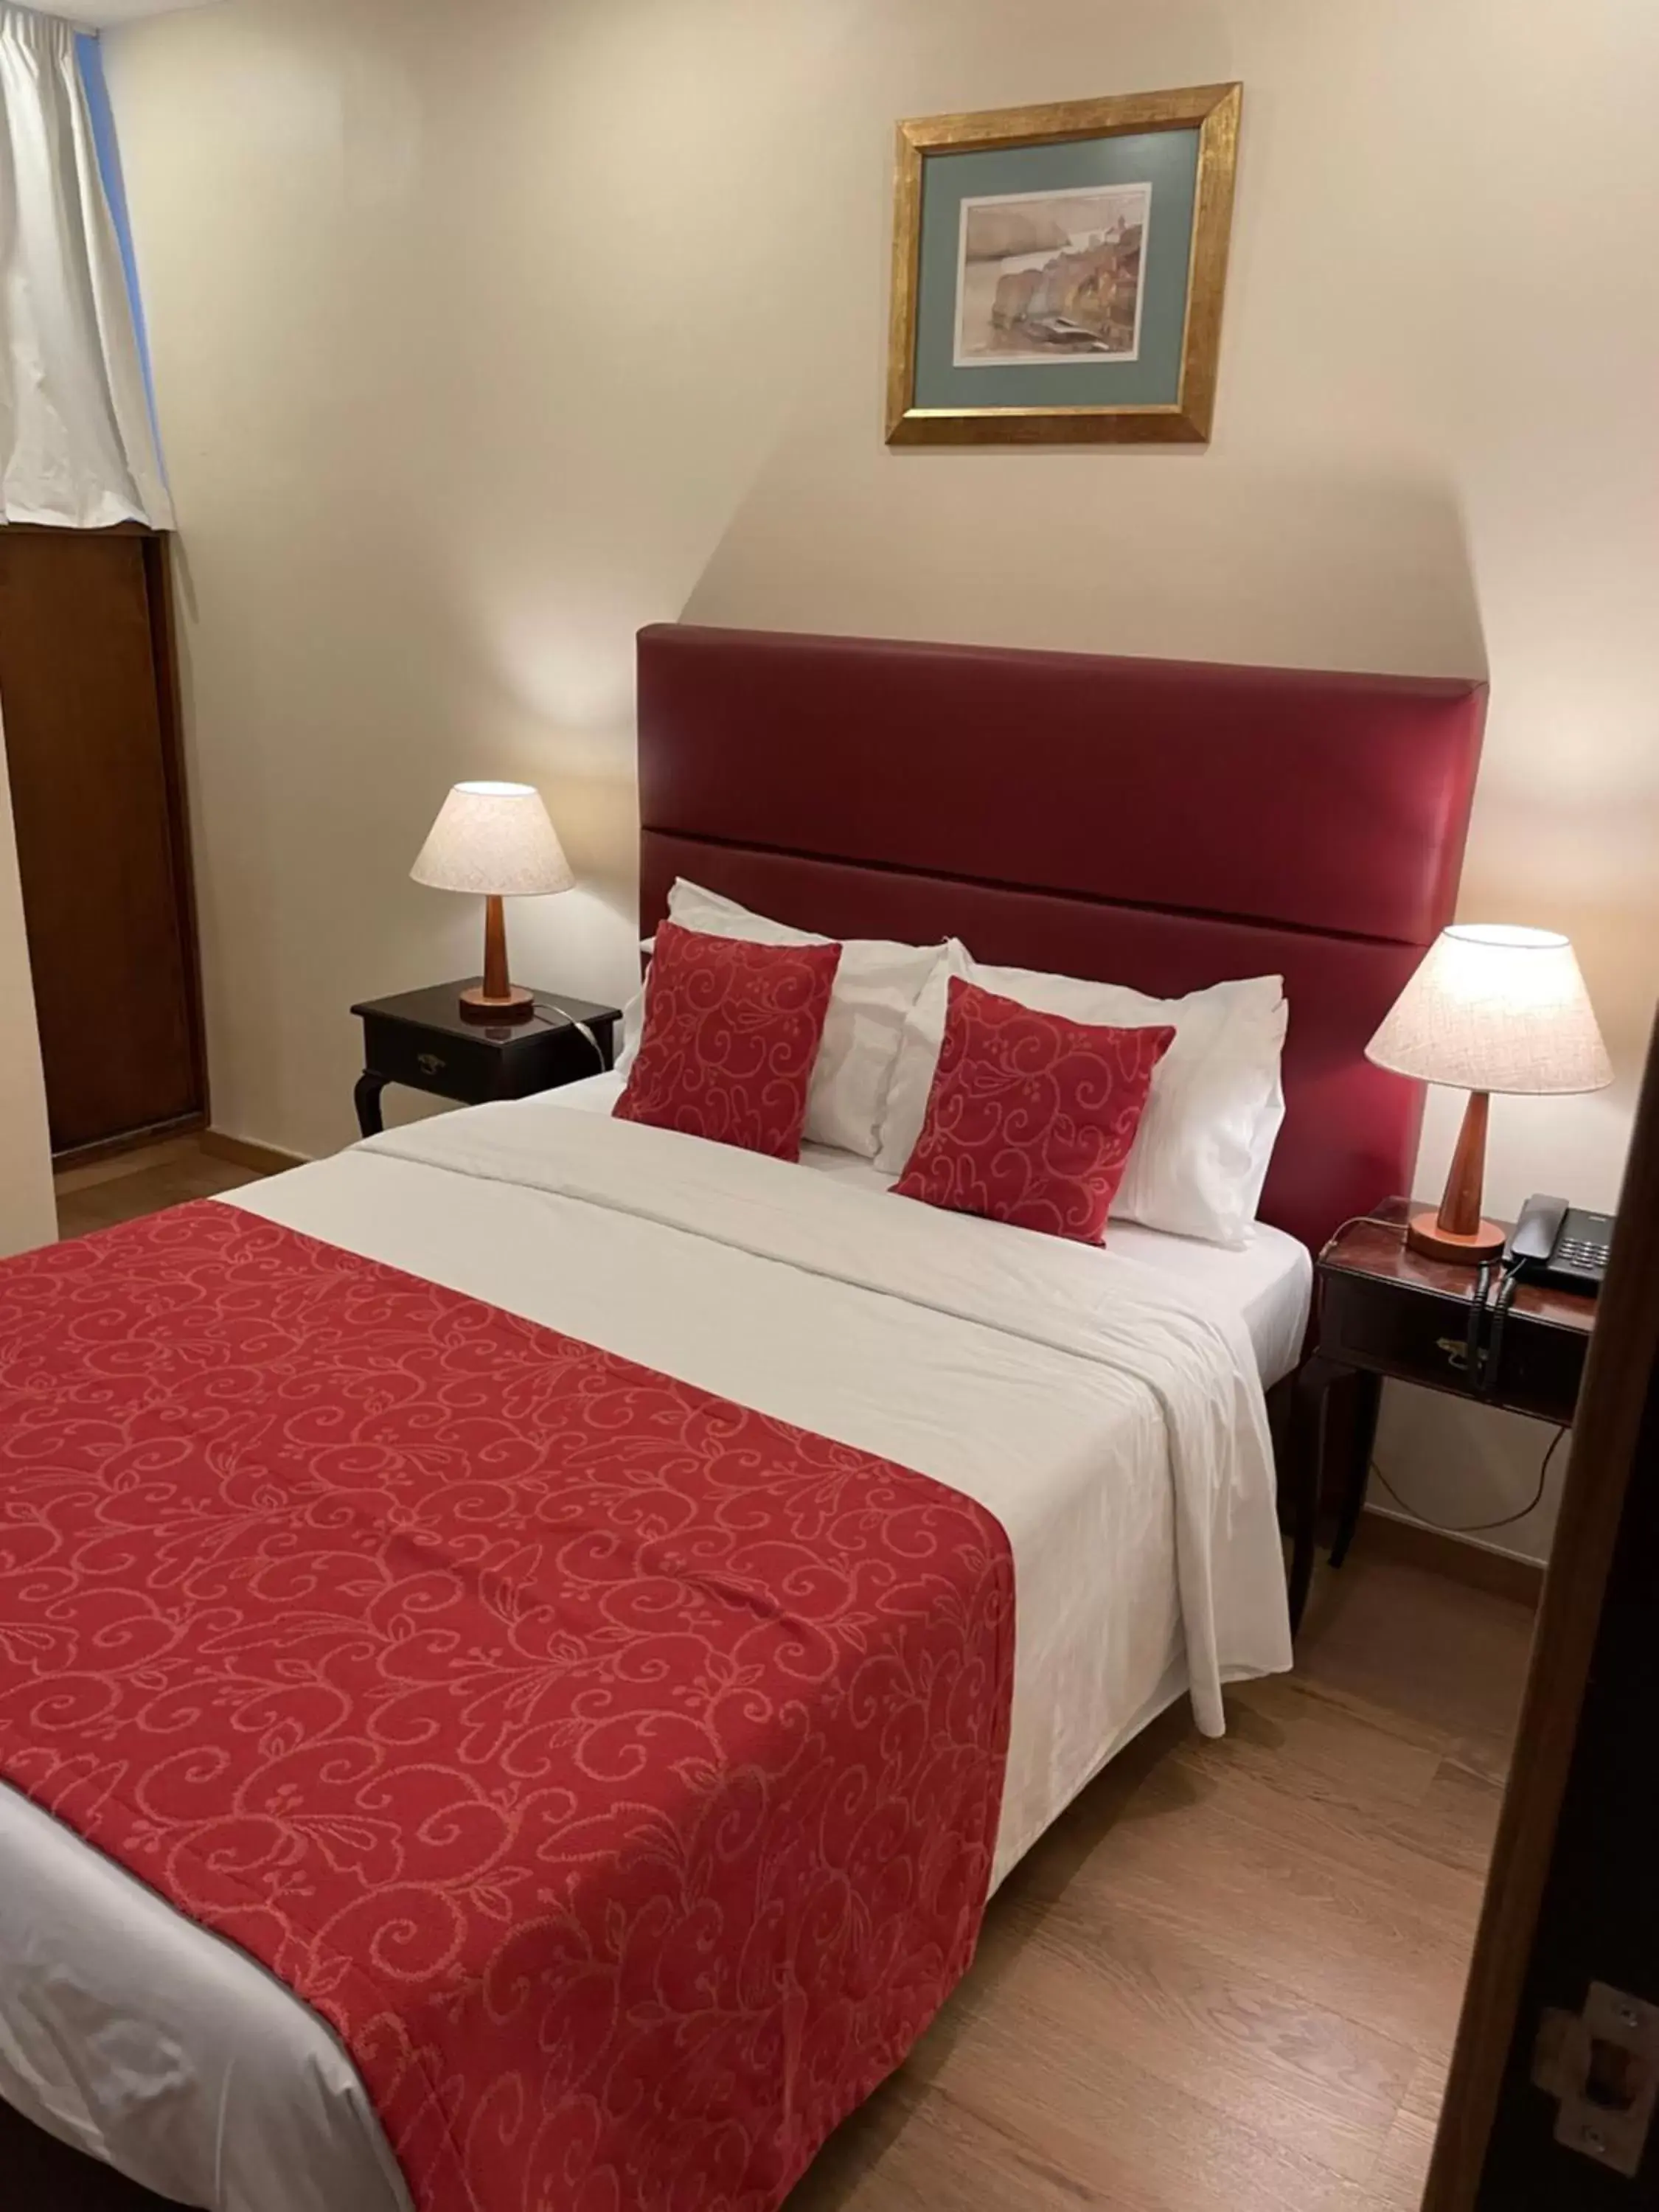 Bed in Pao de Acucar Hotel